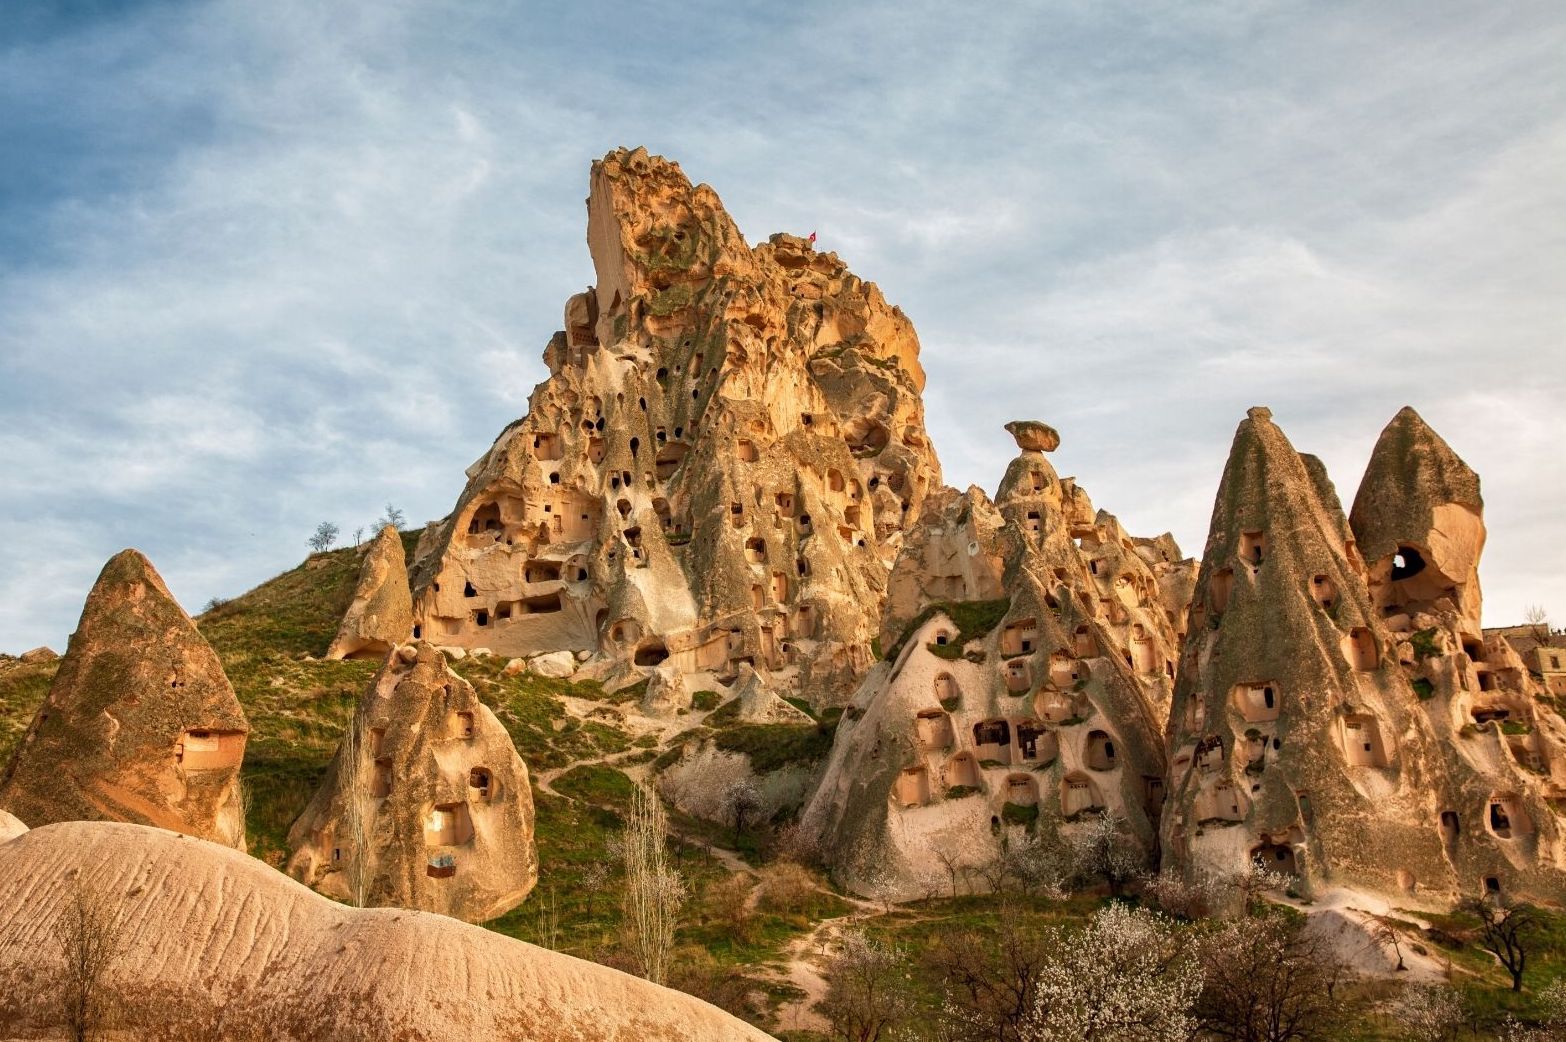 Cappadocia's "fairytale chimney" rock formations.